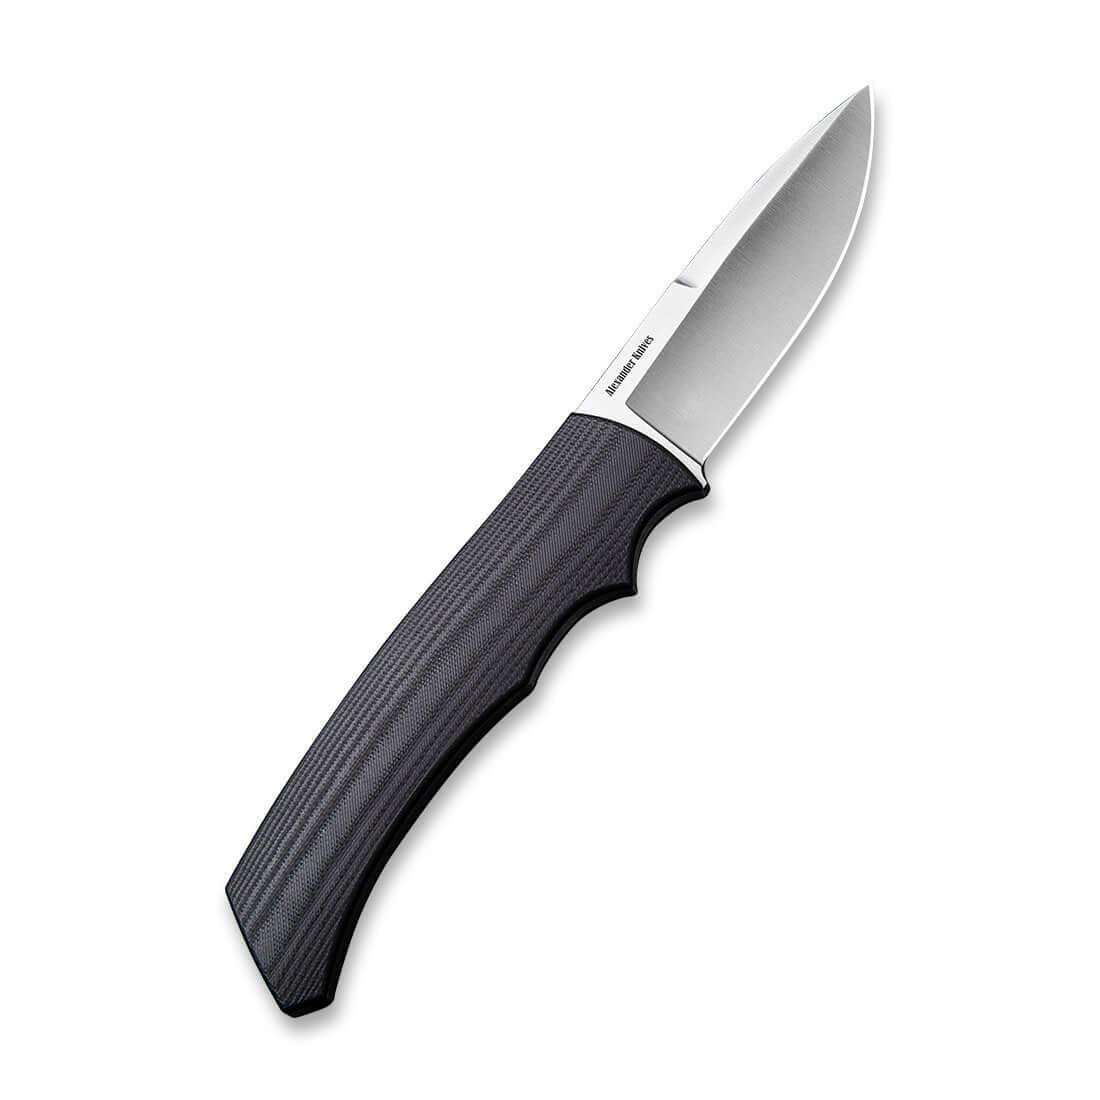 Civivi M2 Backup Fixed Blade Knife Black G10 Handle D2 - Knives.mx